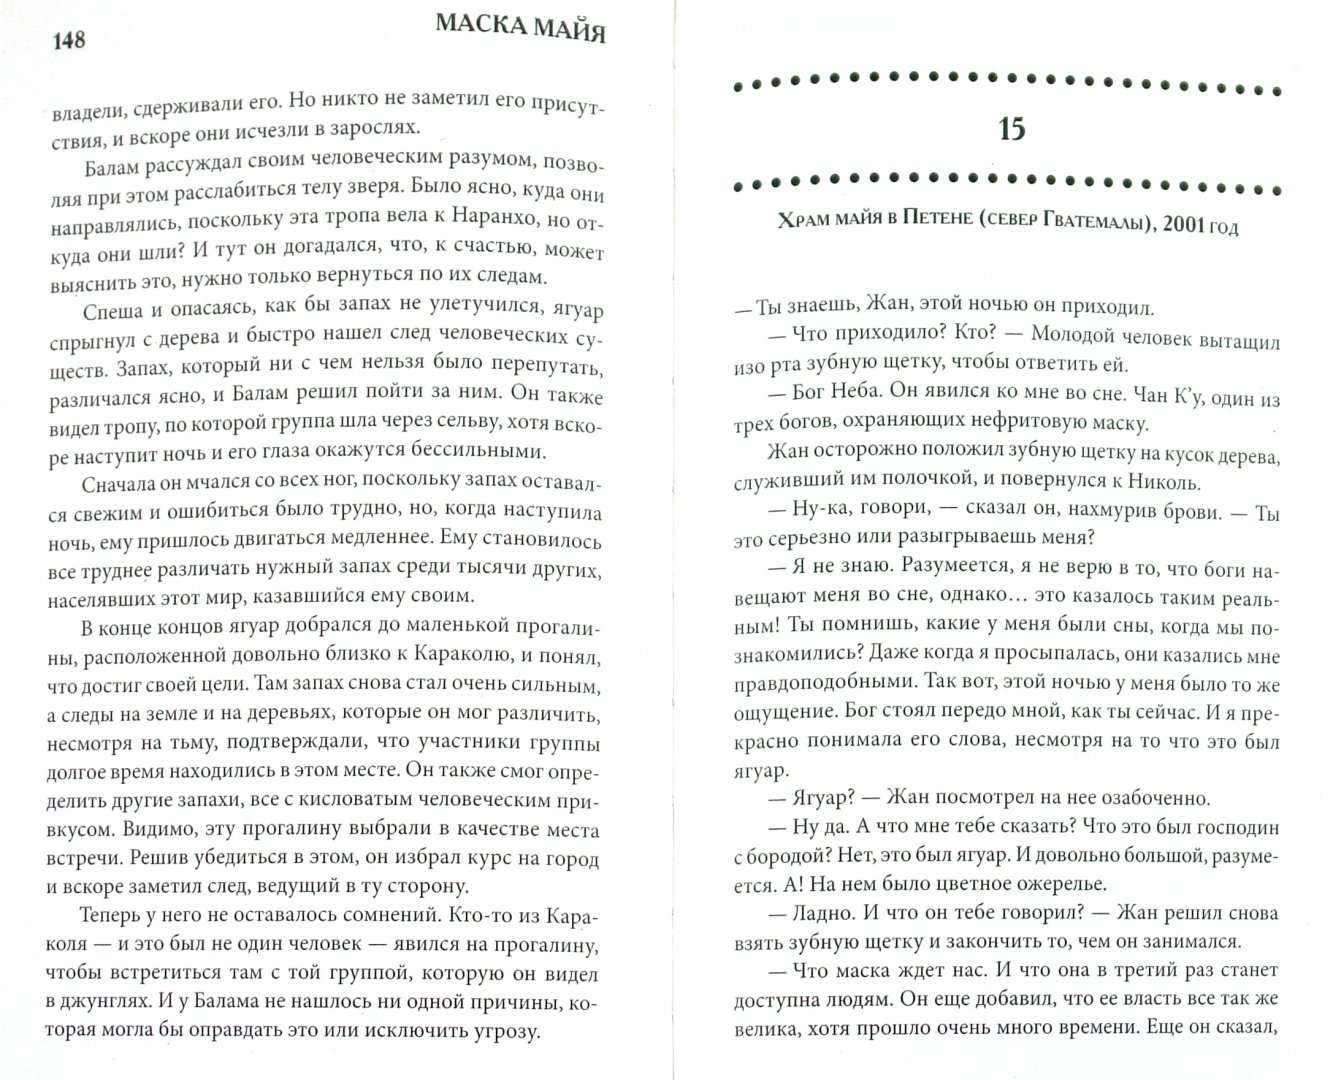 Иллюстрация 1 из 7 для Маска майя - Хуан Марторель | Лабиринт - книги. Источник: Лабиринт